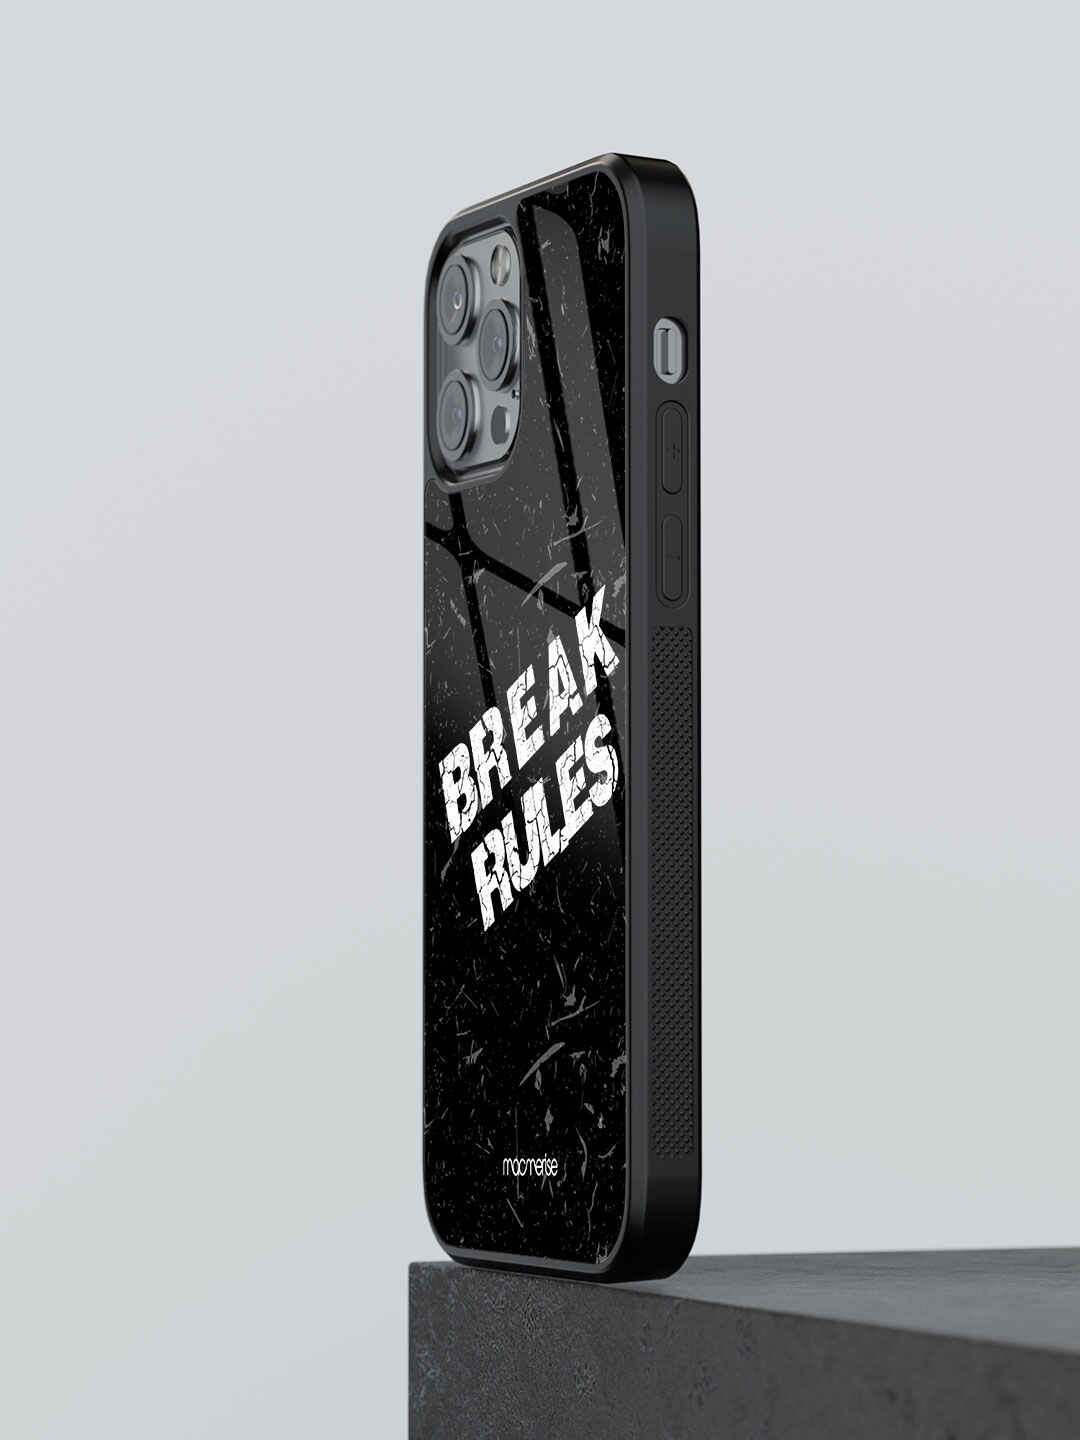 macmerise Black & White Printed iPhone 12 Pro Max Phone Cases Price in India